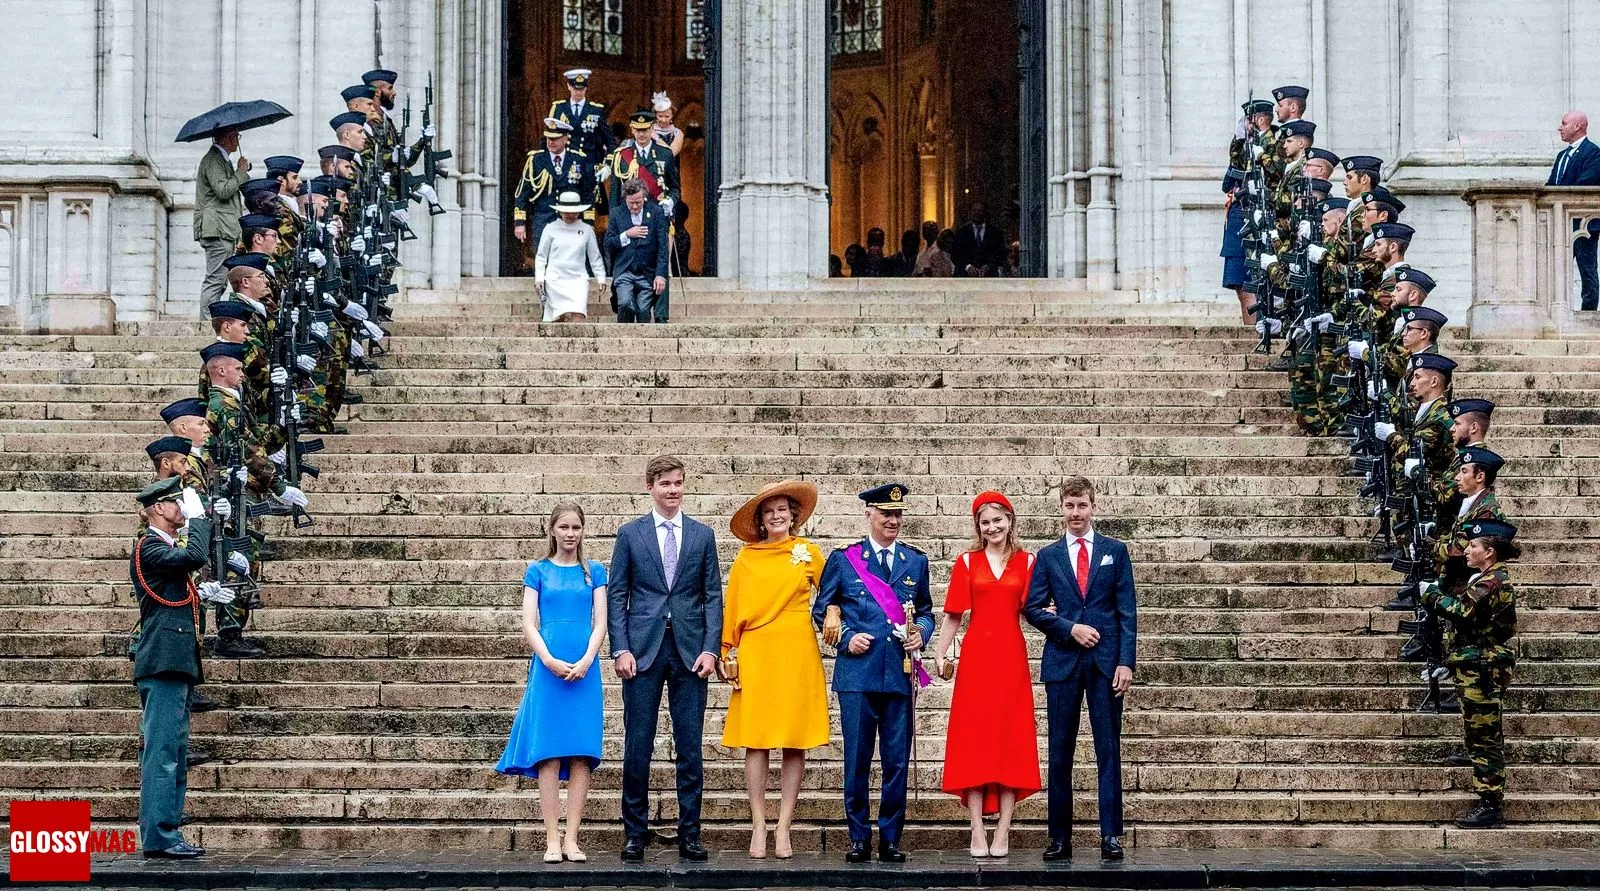 Бельгийская королевская семья на праздновании Национального дня Бельгии, 21 июля 2022 г.